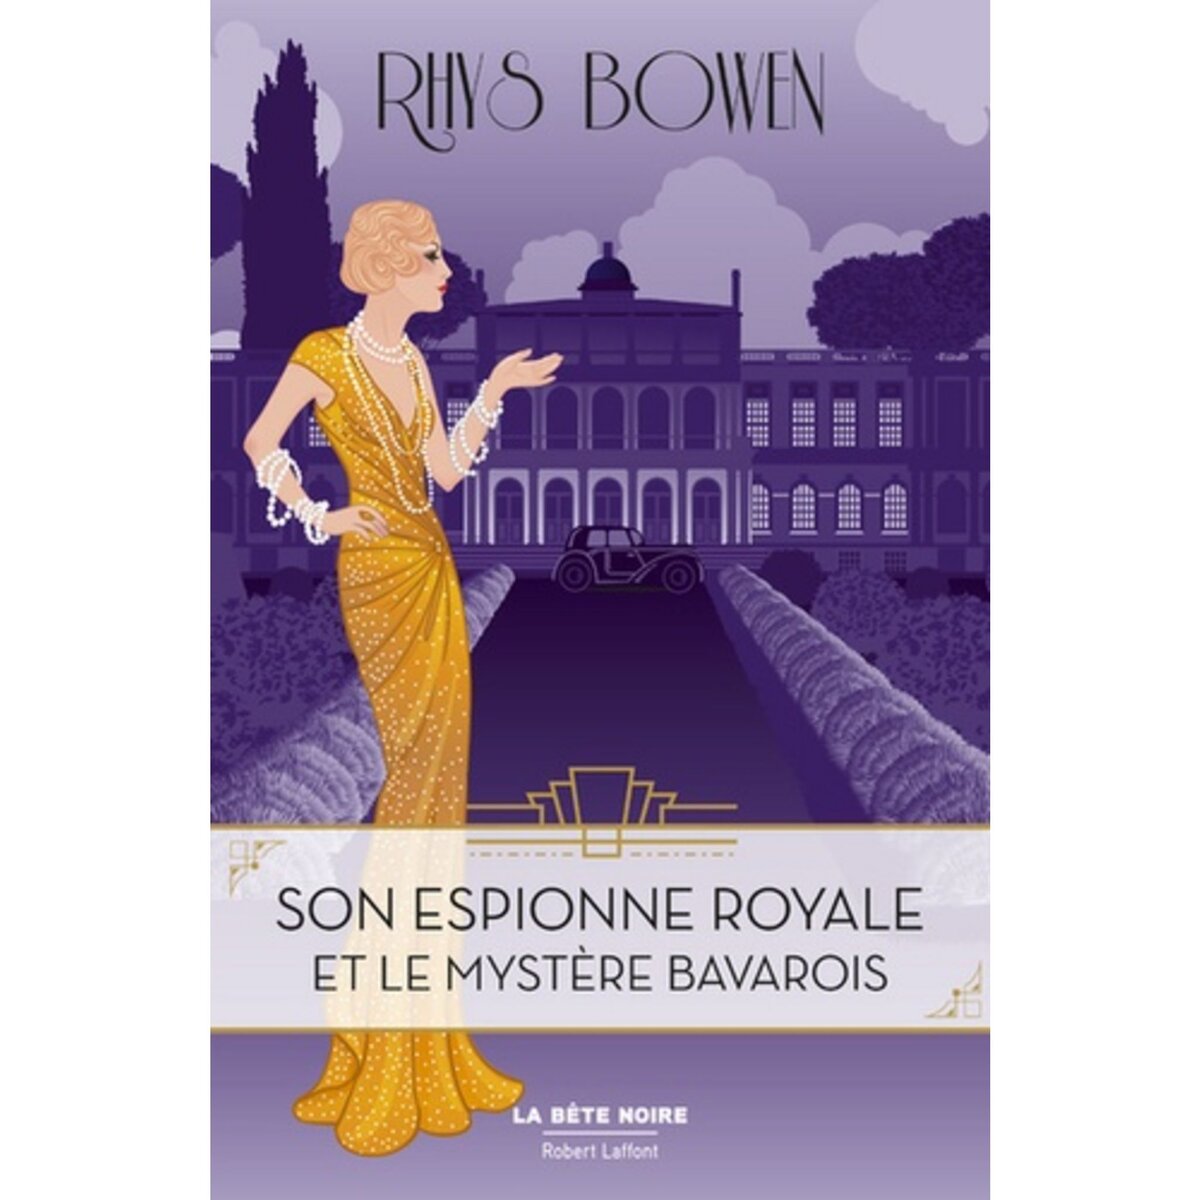  Son espionne royale Tome 2 : Son espionne royale et le mystère bavarois, Bowen Rhys